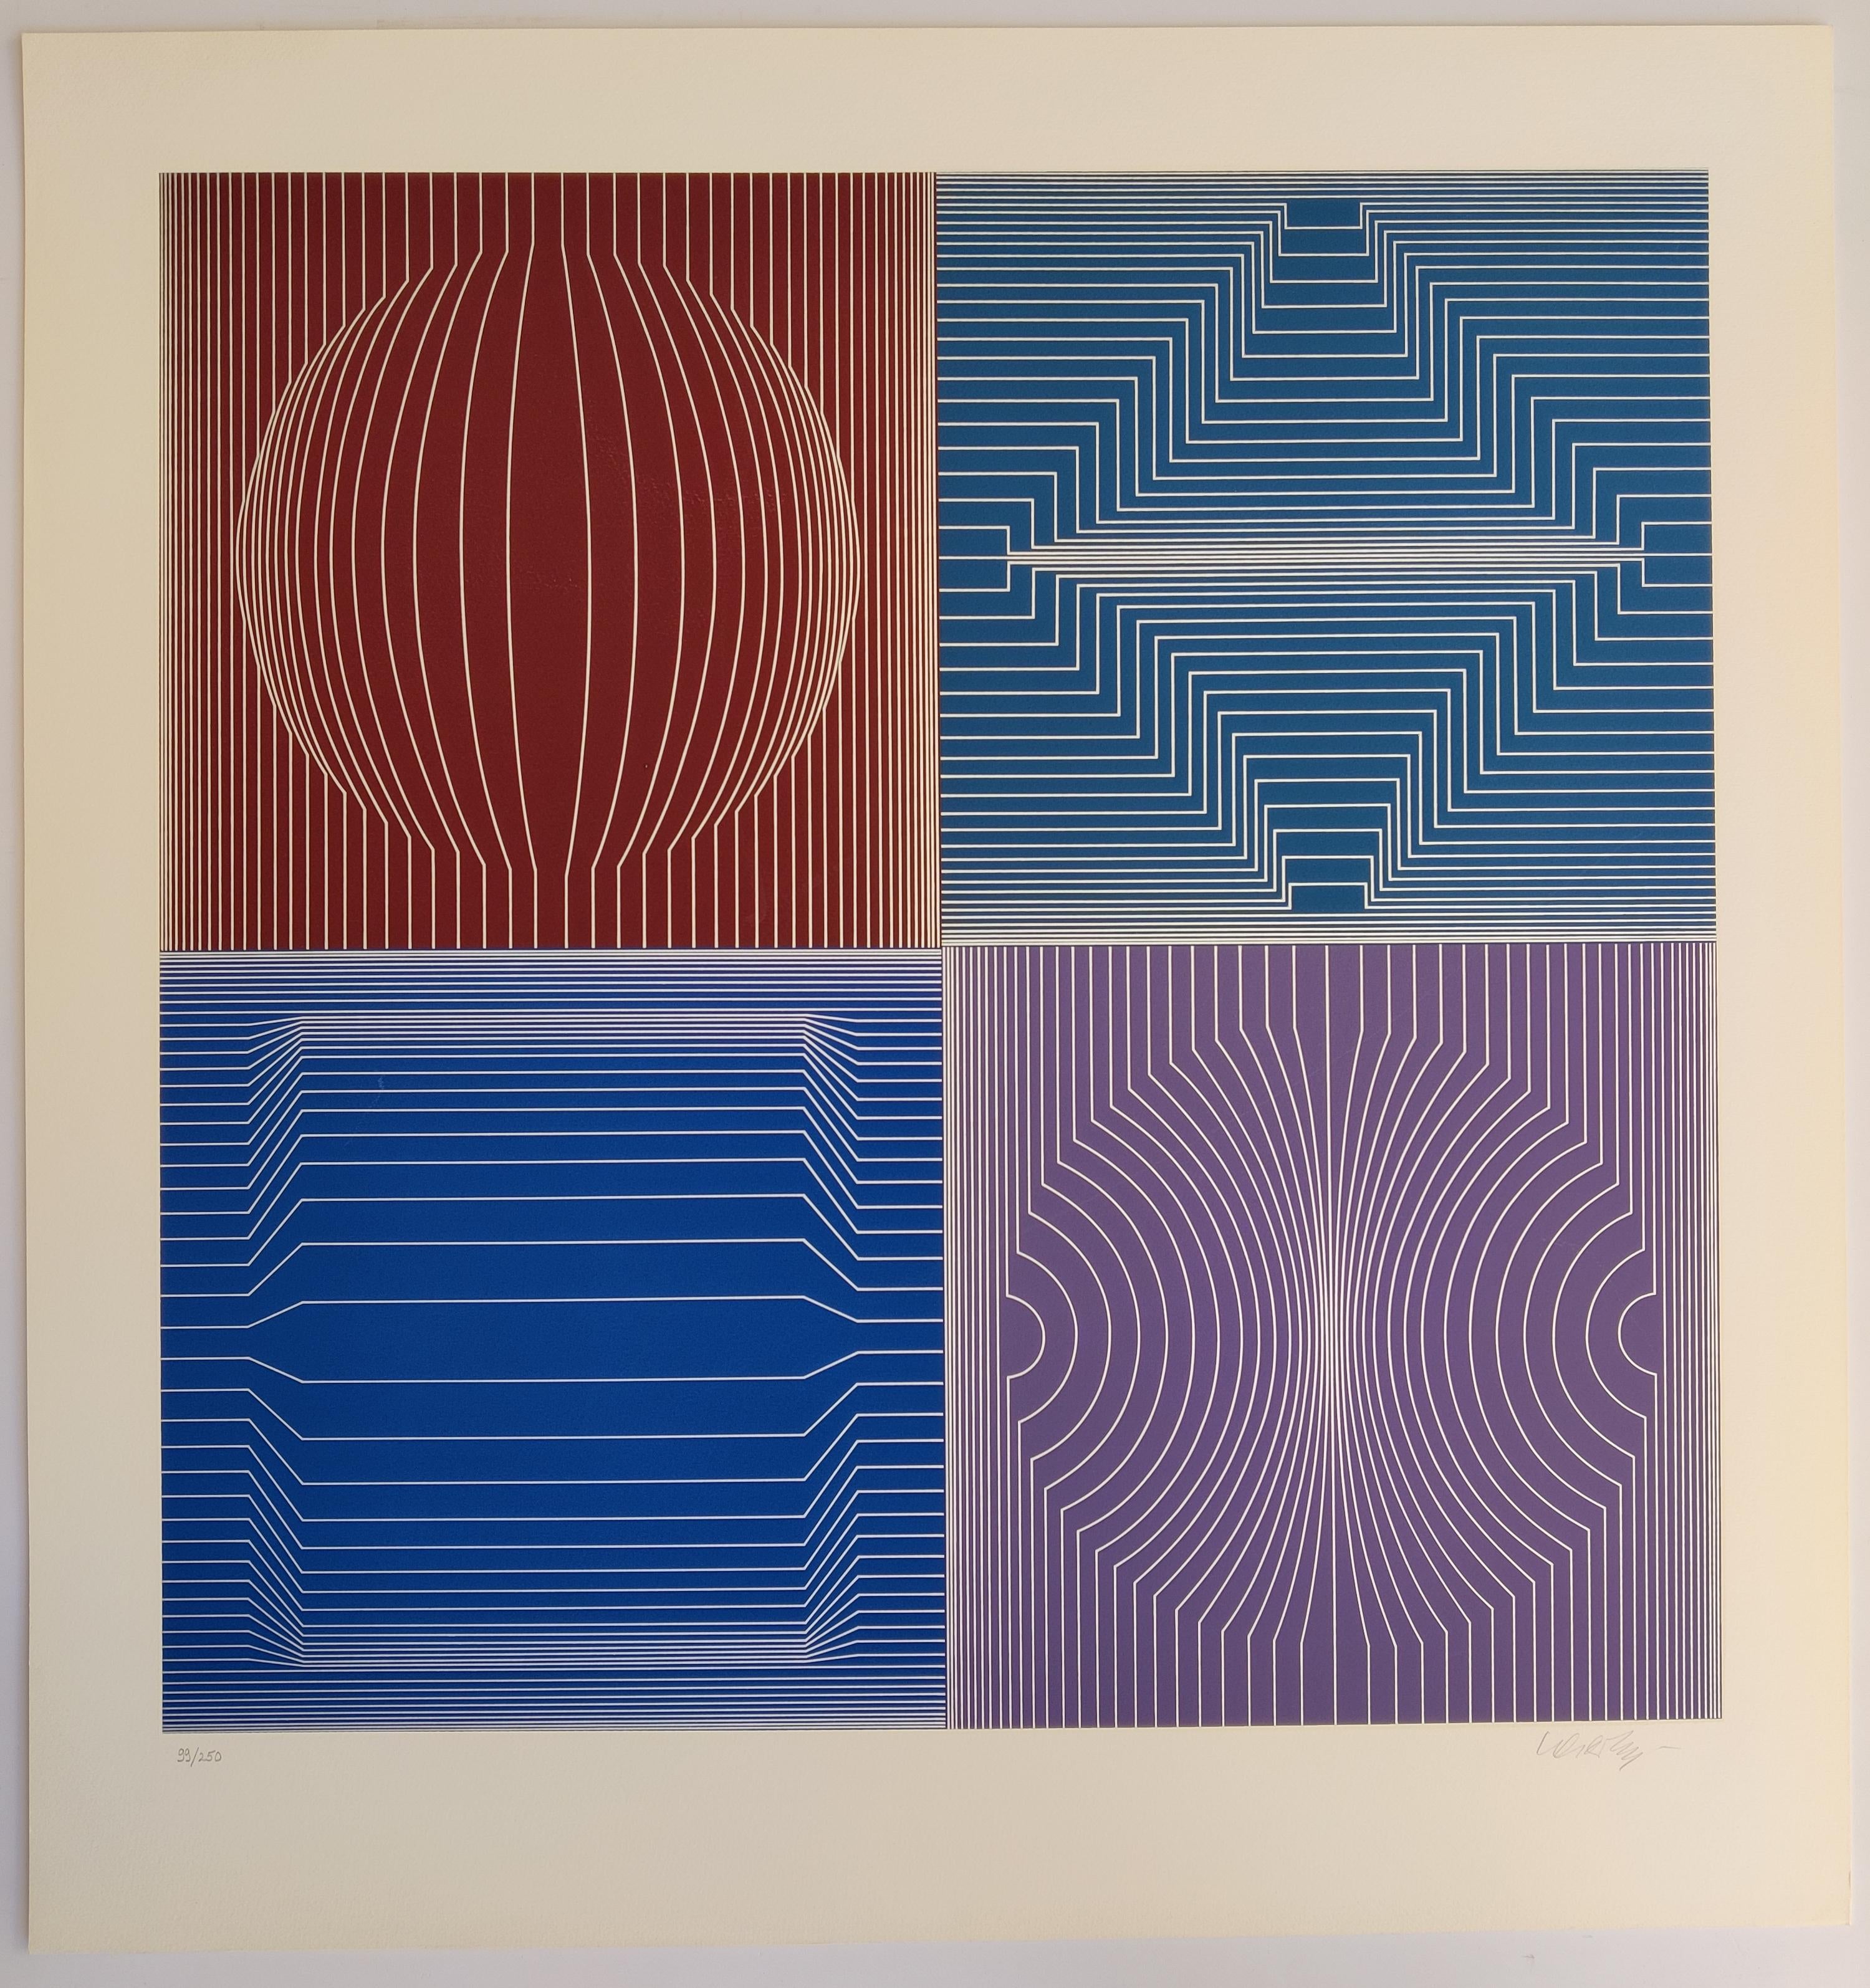 Victor Vasarely 
Tokio,  1982
Handsigniert unten rechts 
Auflage: 99/250 mit Bleistift
Bildgröße: 65 x 65 cm
Blattgröße: 79,5 x 75,8 cm

